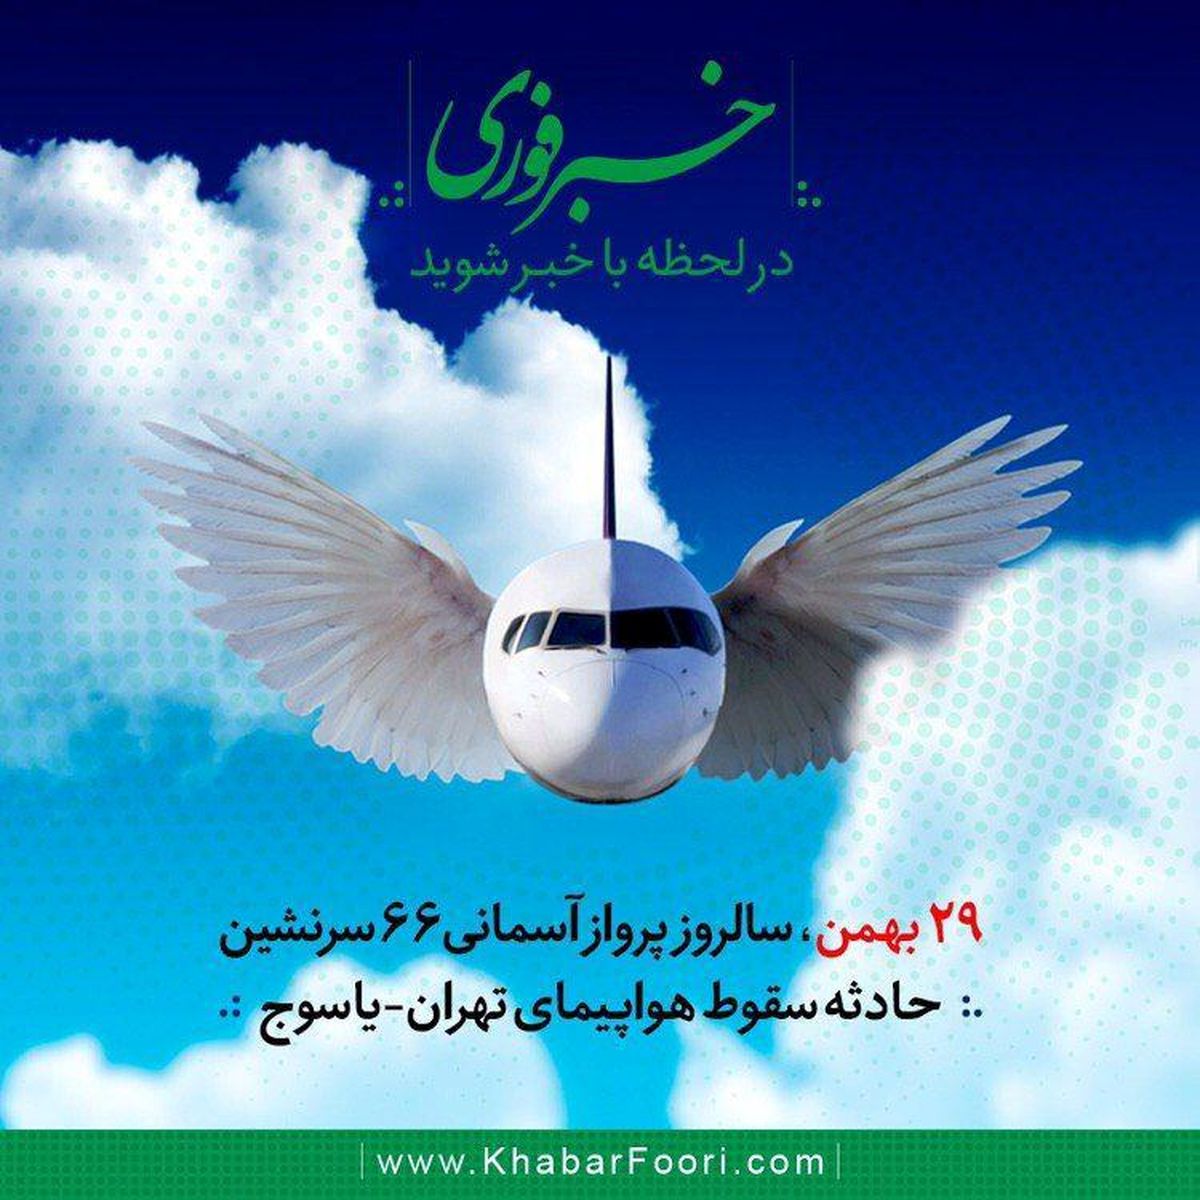 تقویم تاریخ/هواپیمای مسافربری تهران-یاسوج به کوه دنا برخورد کرد